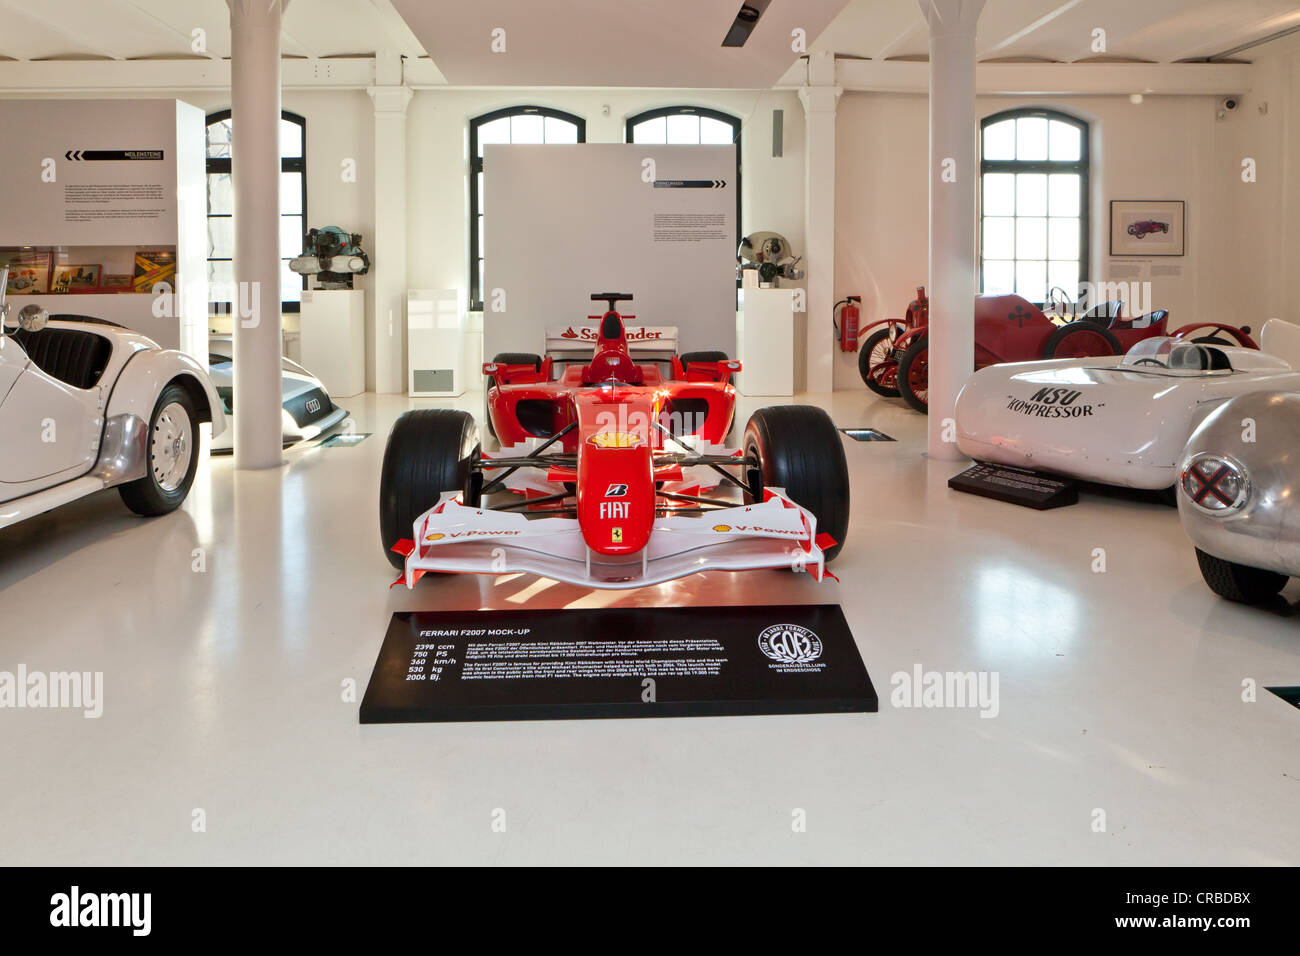 Ferrari F2007 mock-up desde 2006, el campeón del mundo Kimi Raikkonen de coche desde 2007, Museo Prototyp Hamburgo Hafencity trimestre Foto de stock